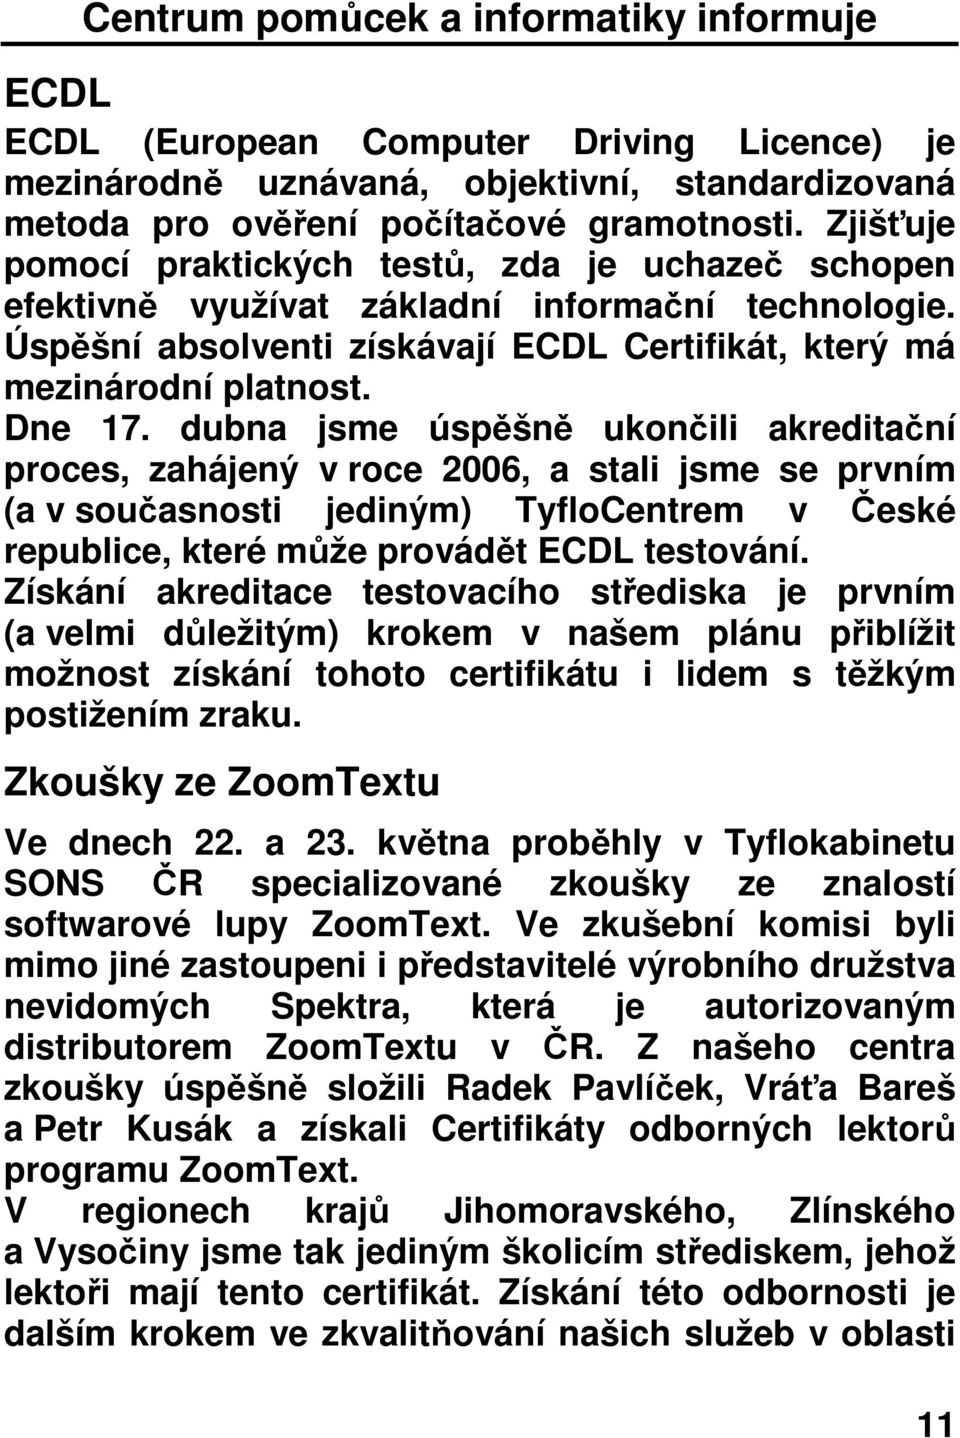 dubna jsme úspěšně ukončili akreditační proces, zahájený v roce 2006, a stali jsme se prvním (a v současnosti jediným) TyfloCentrem v České republice, které může provádět ECDL testování.